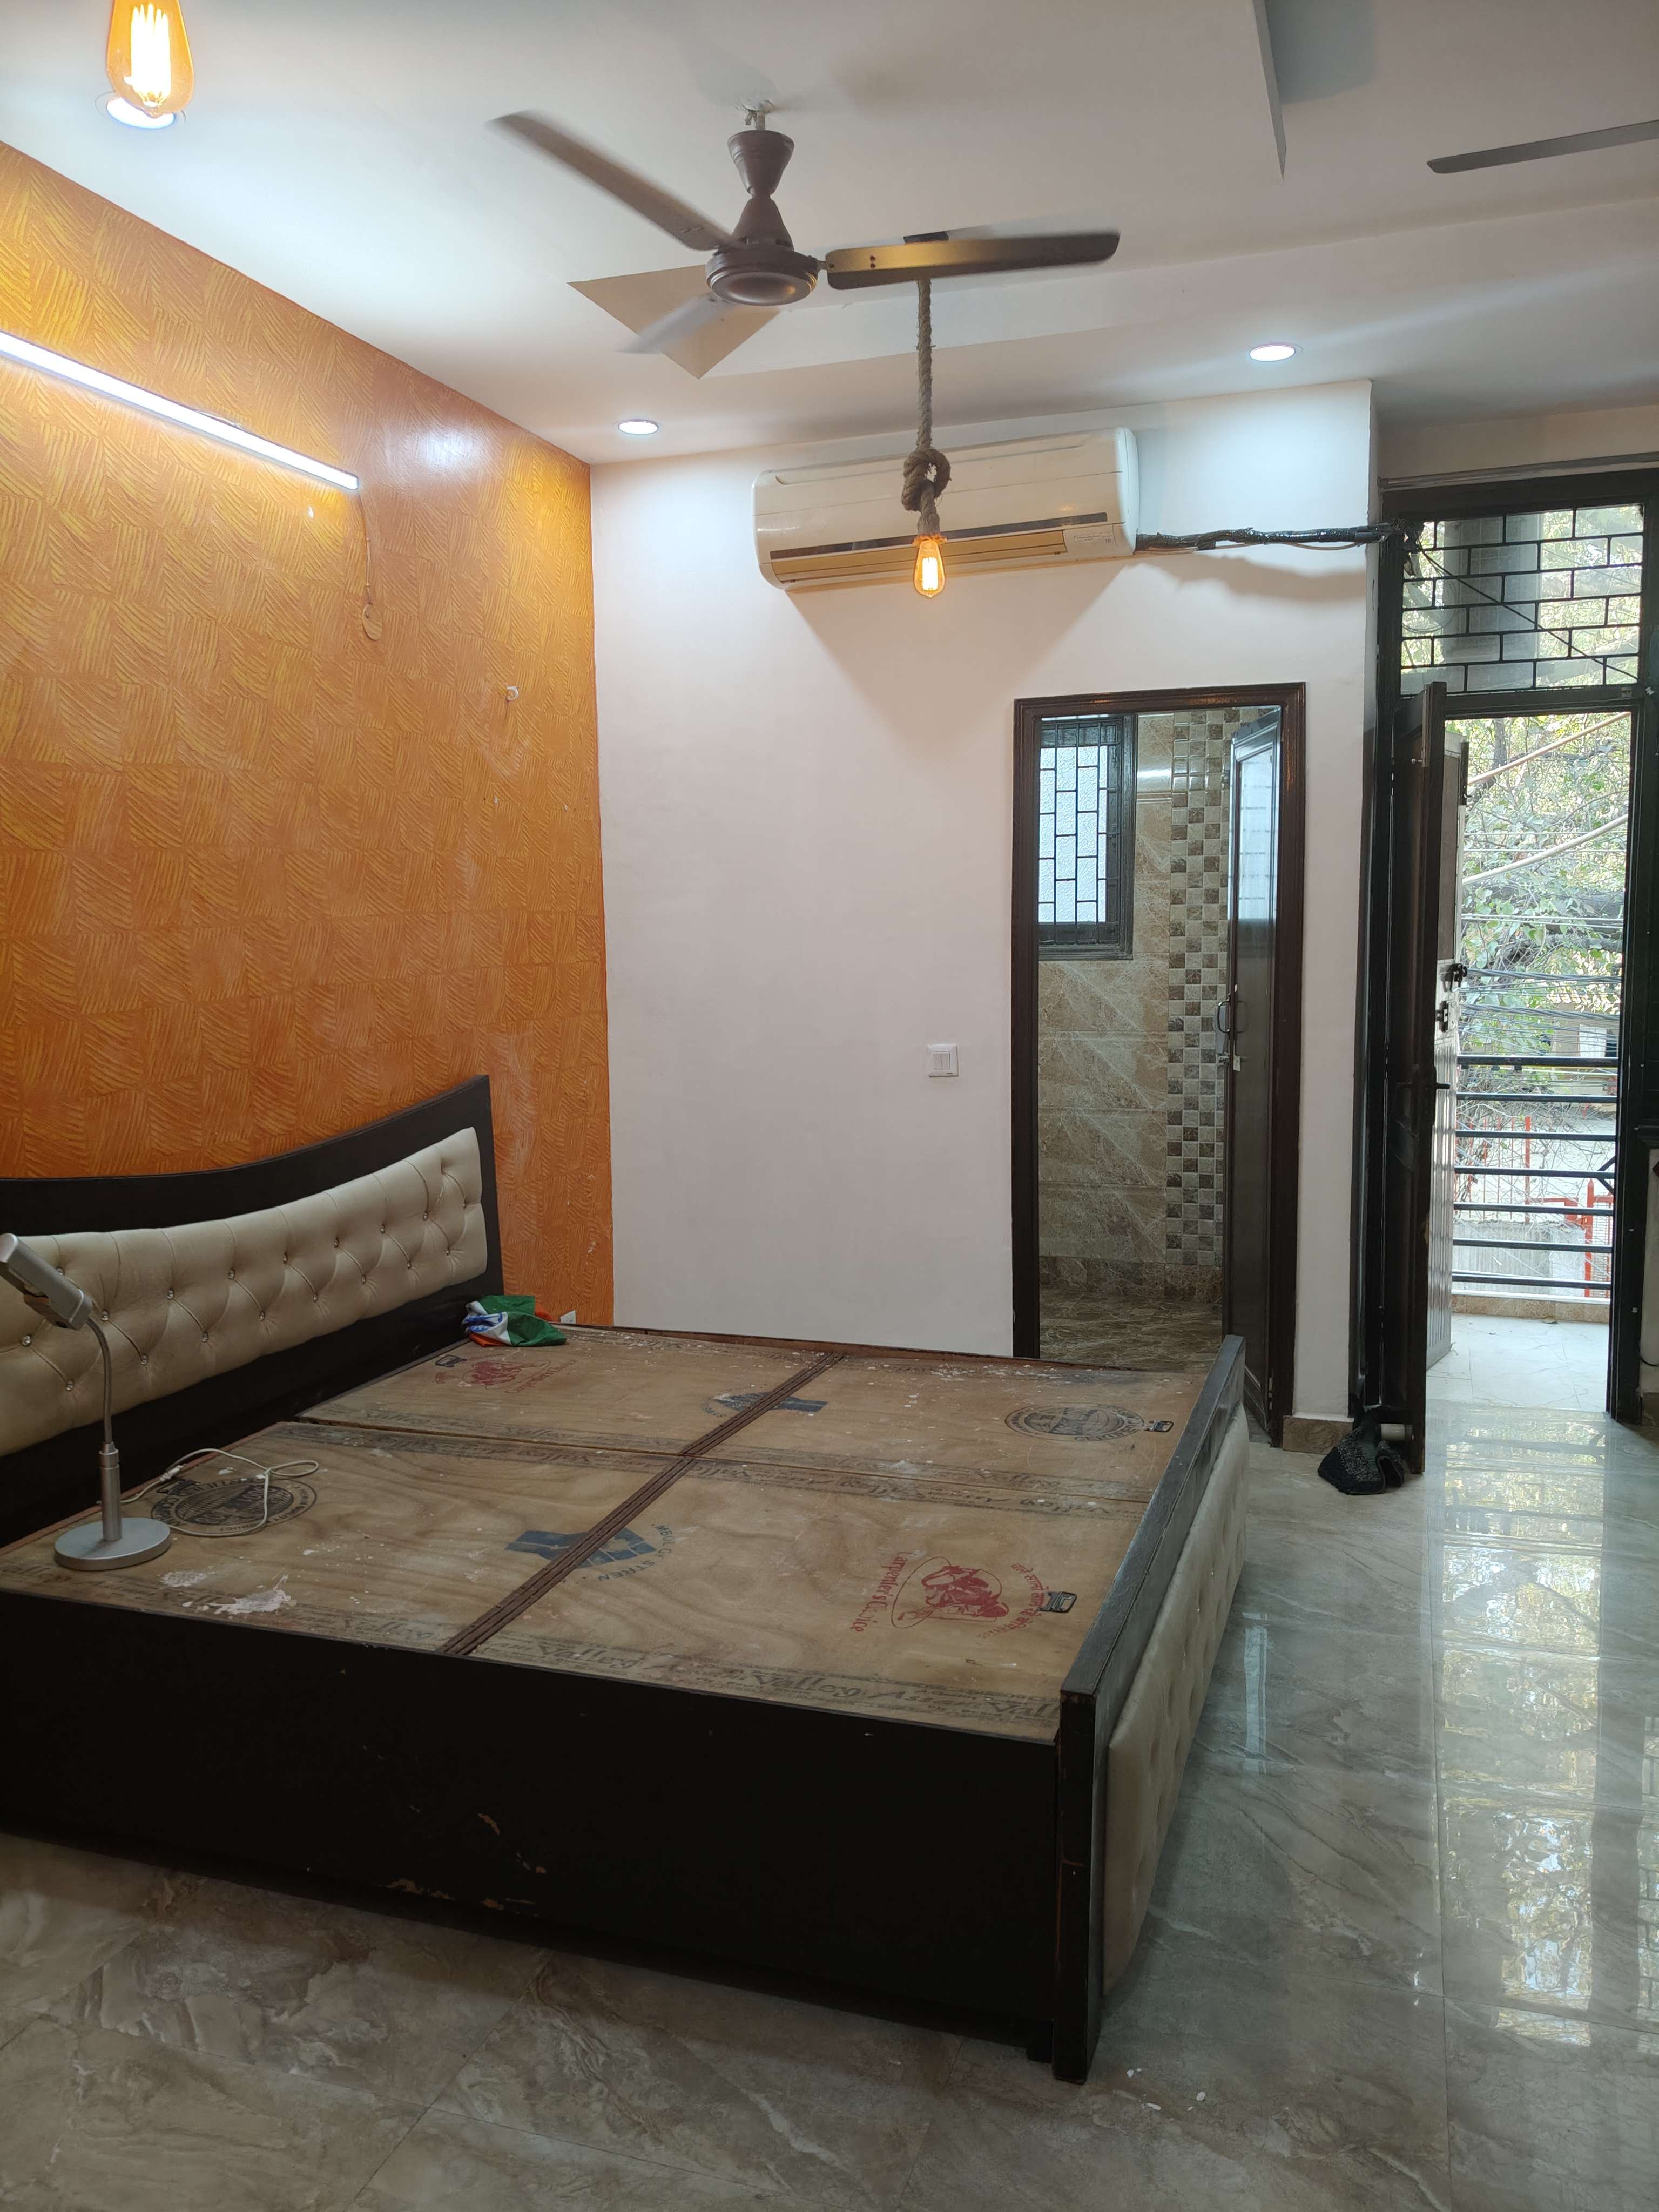 Studio Builder Floor For Rent in Bhogal Delhi 6545857